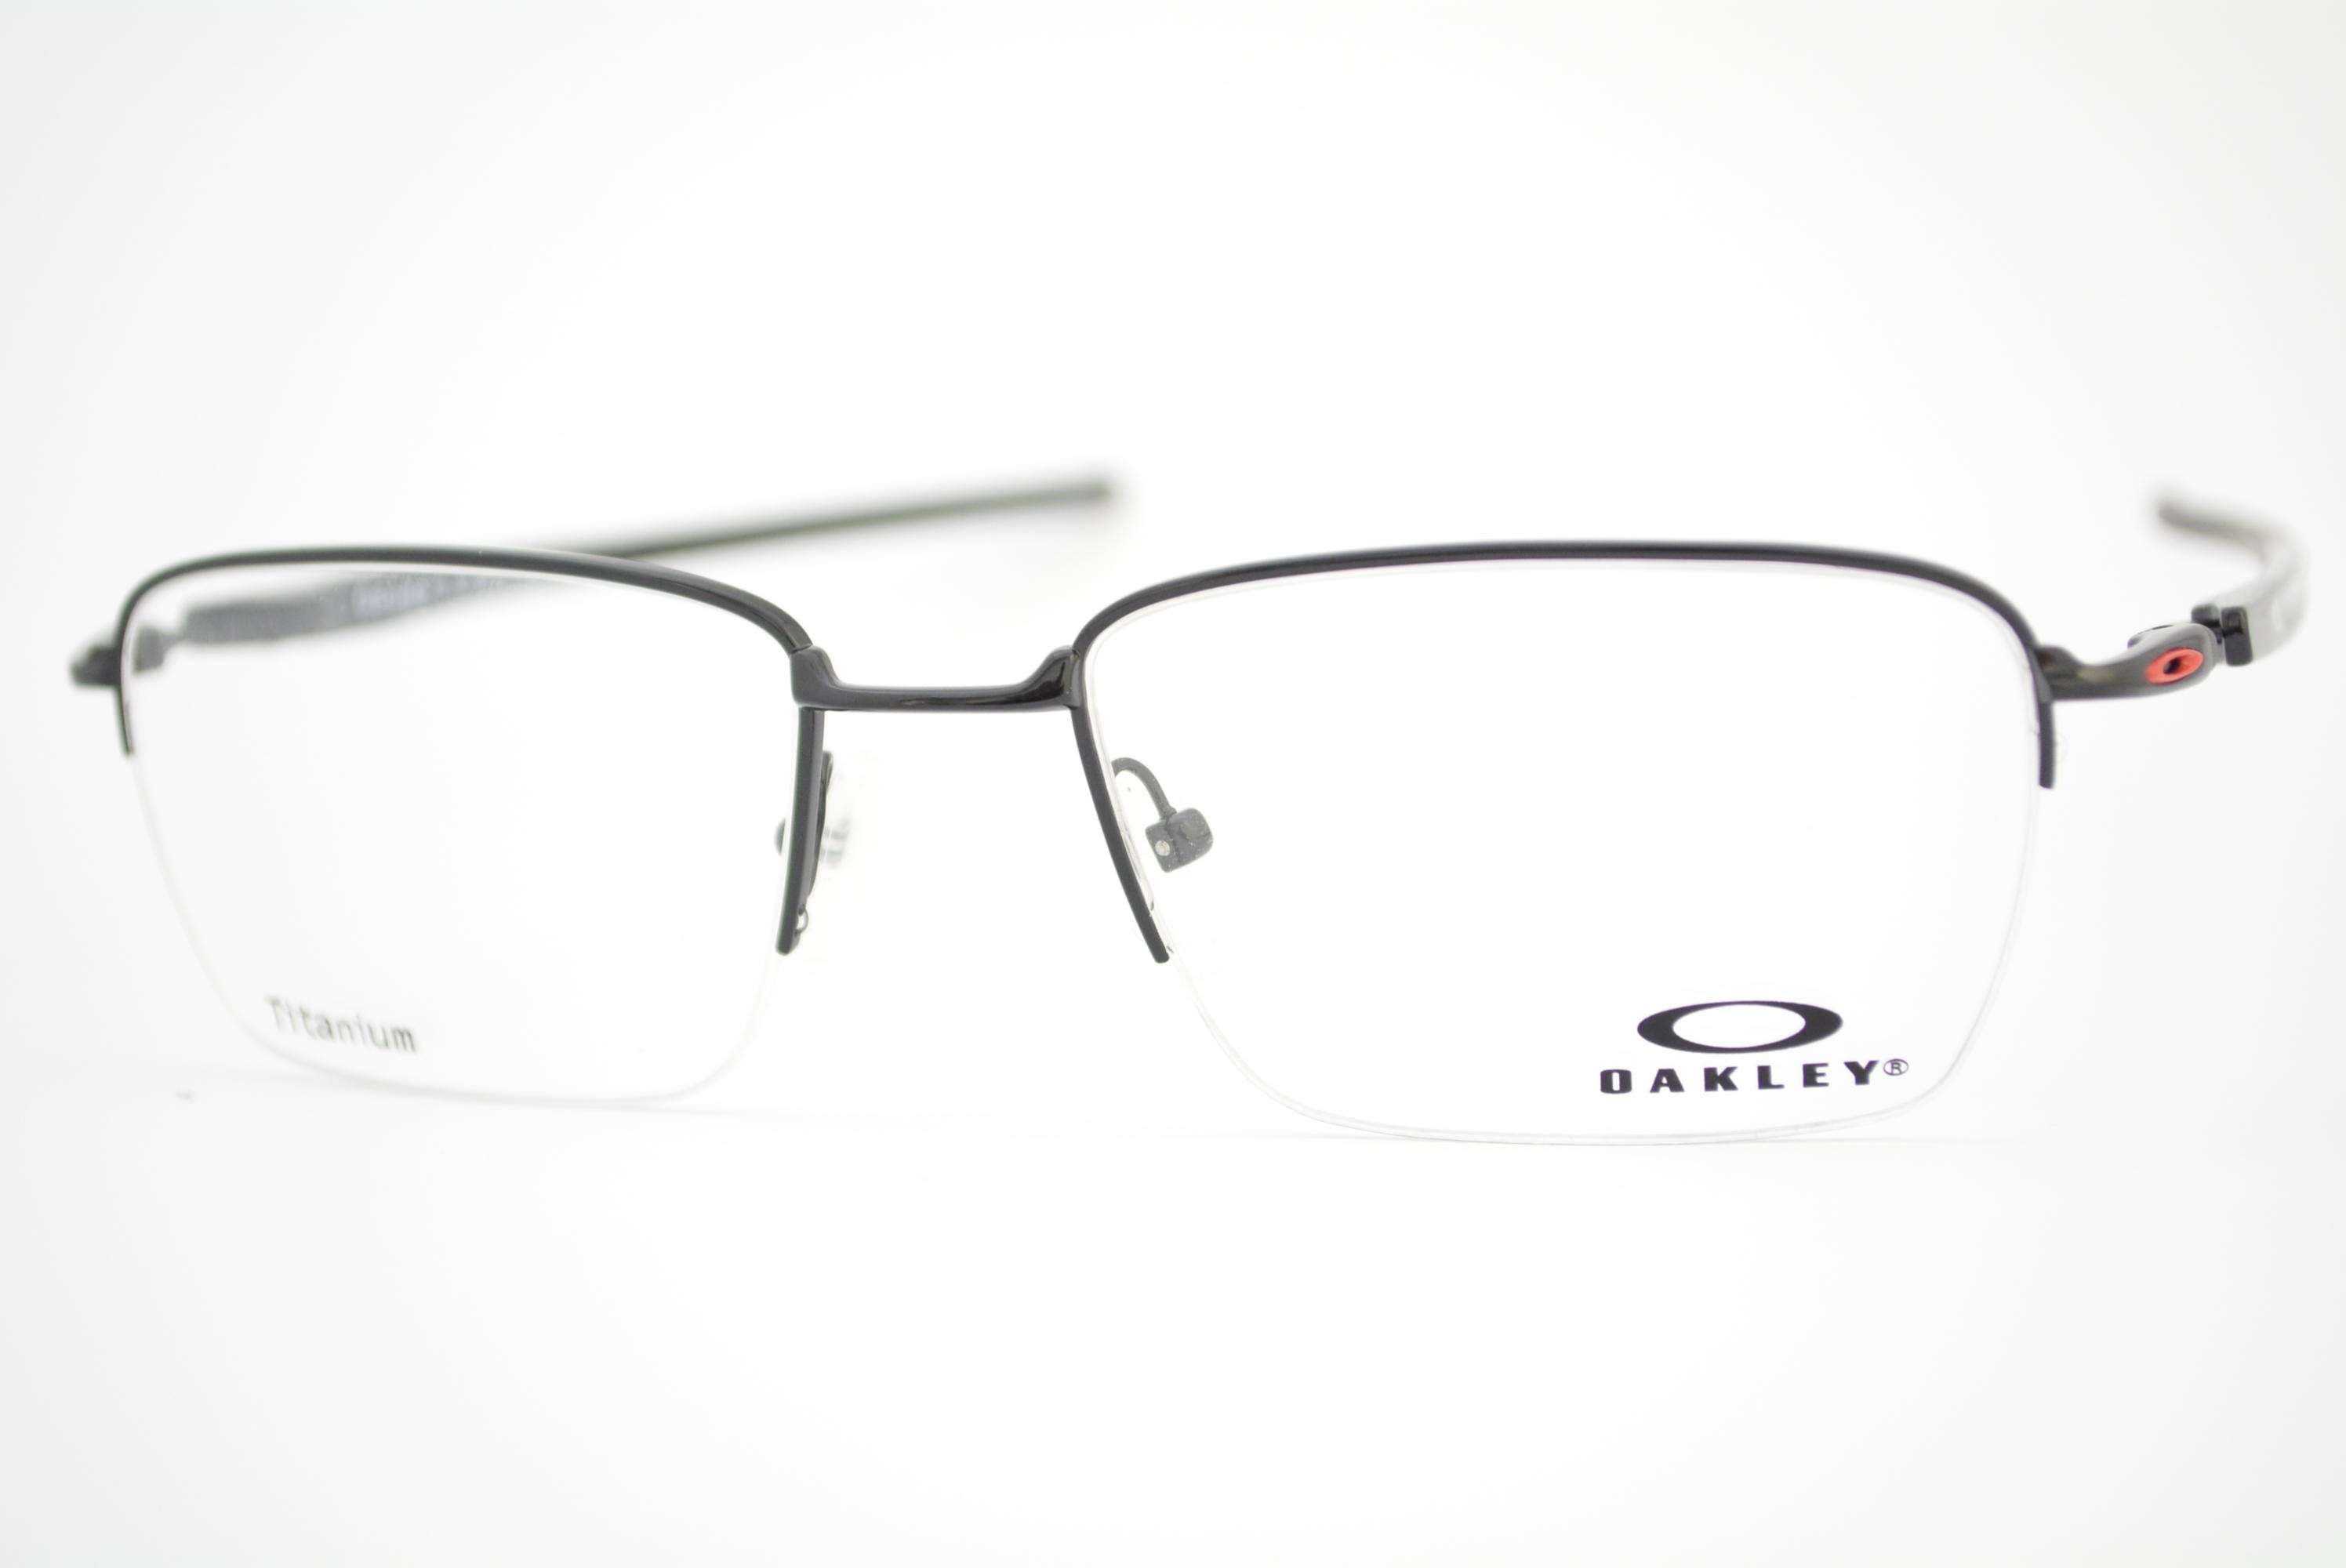 armação de óculos Oakley mod Gauge 3.2 Blade ox5128-0454 titanium